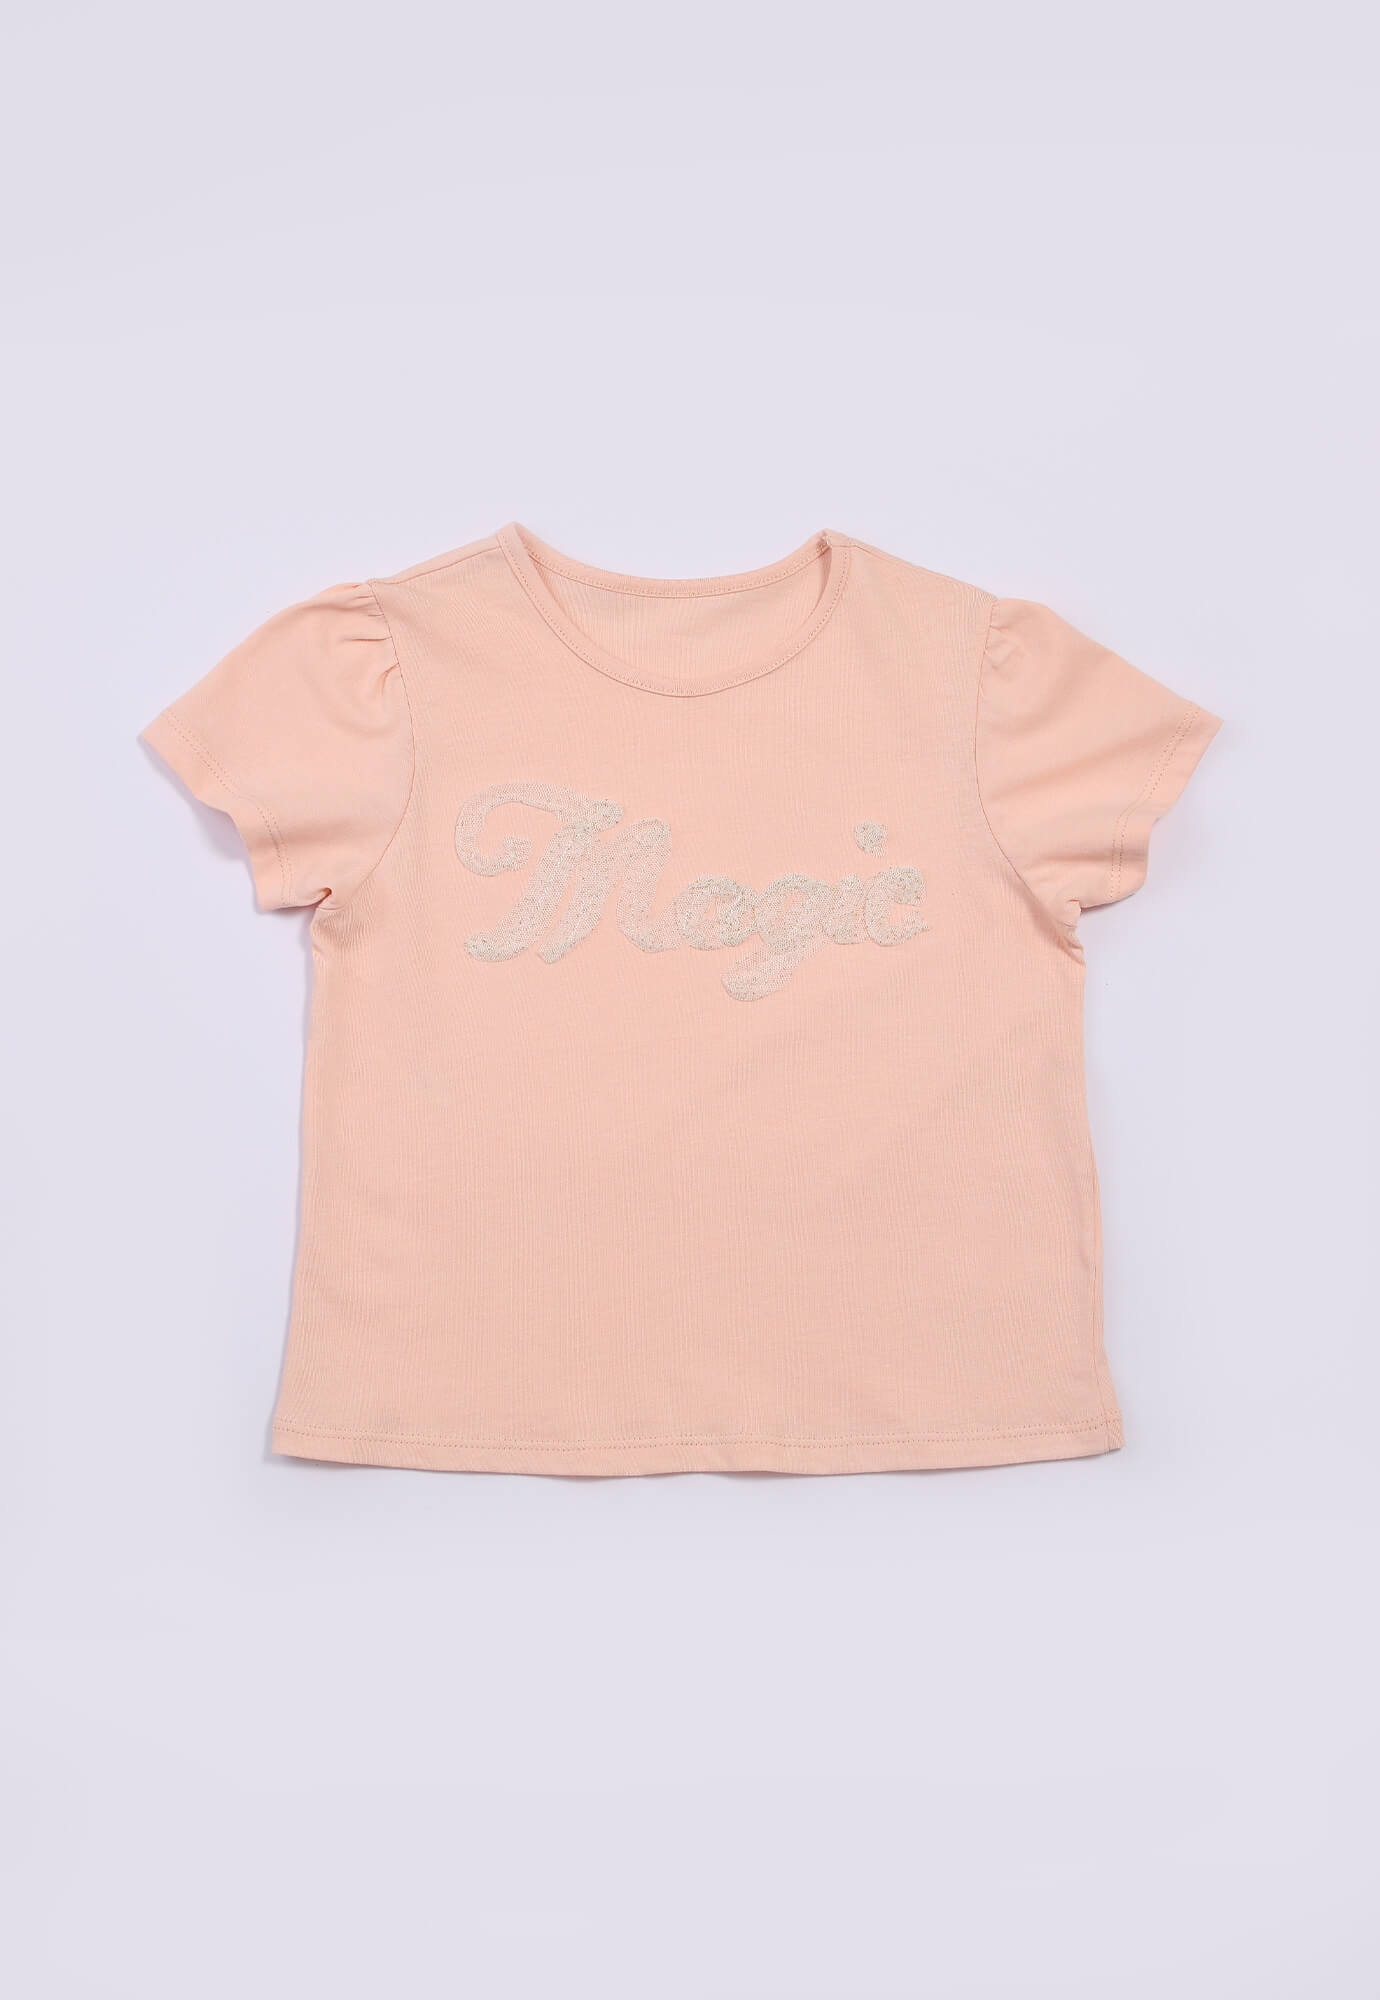 Camiseta rosada concha estampada con recogido en manga para bebé niña